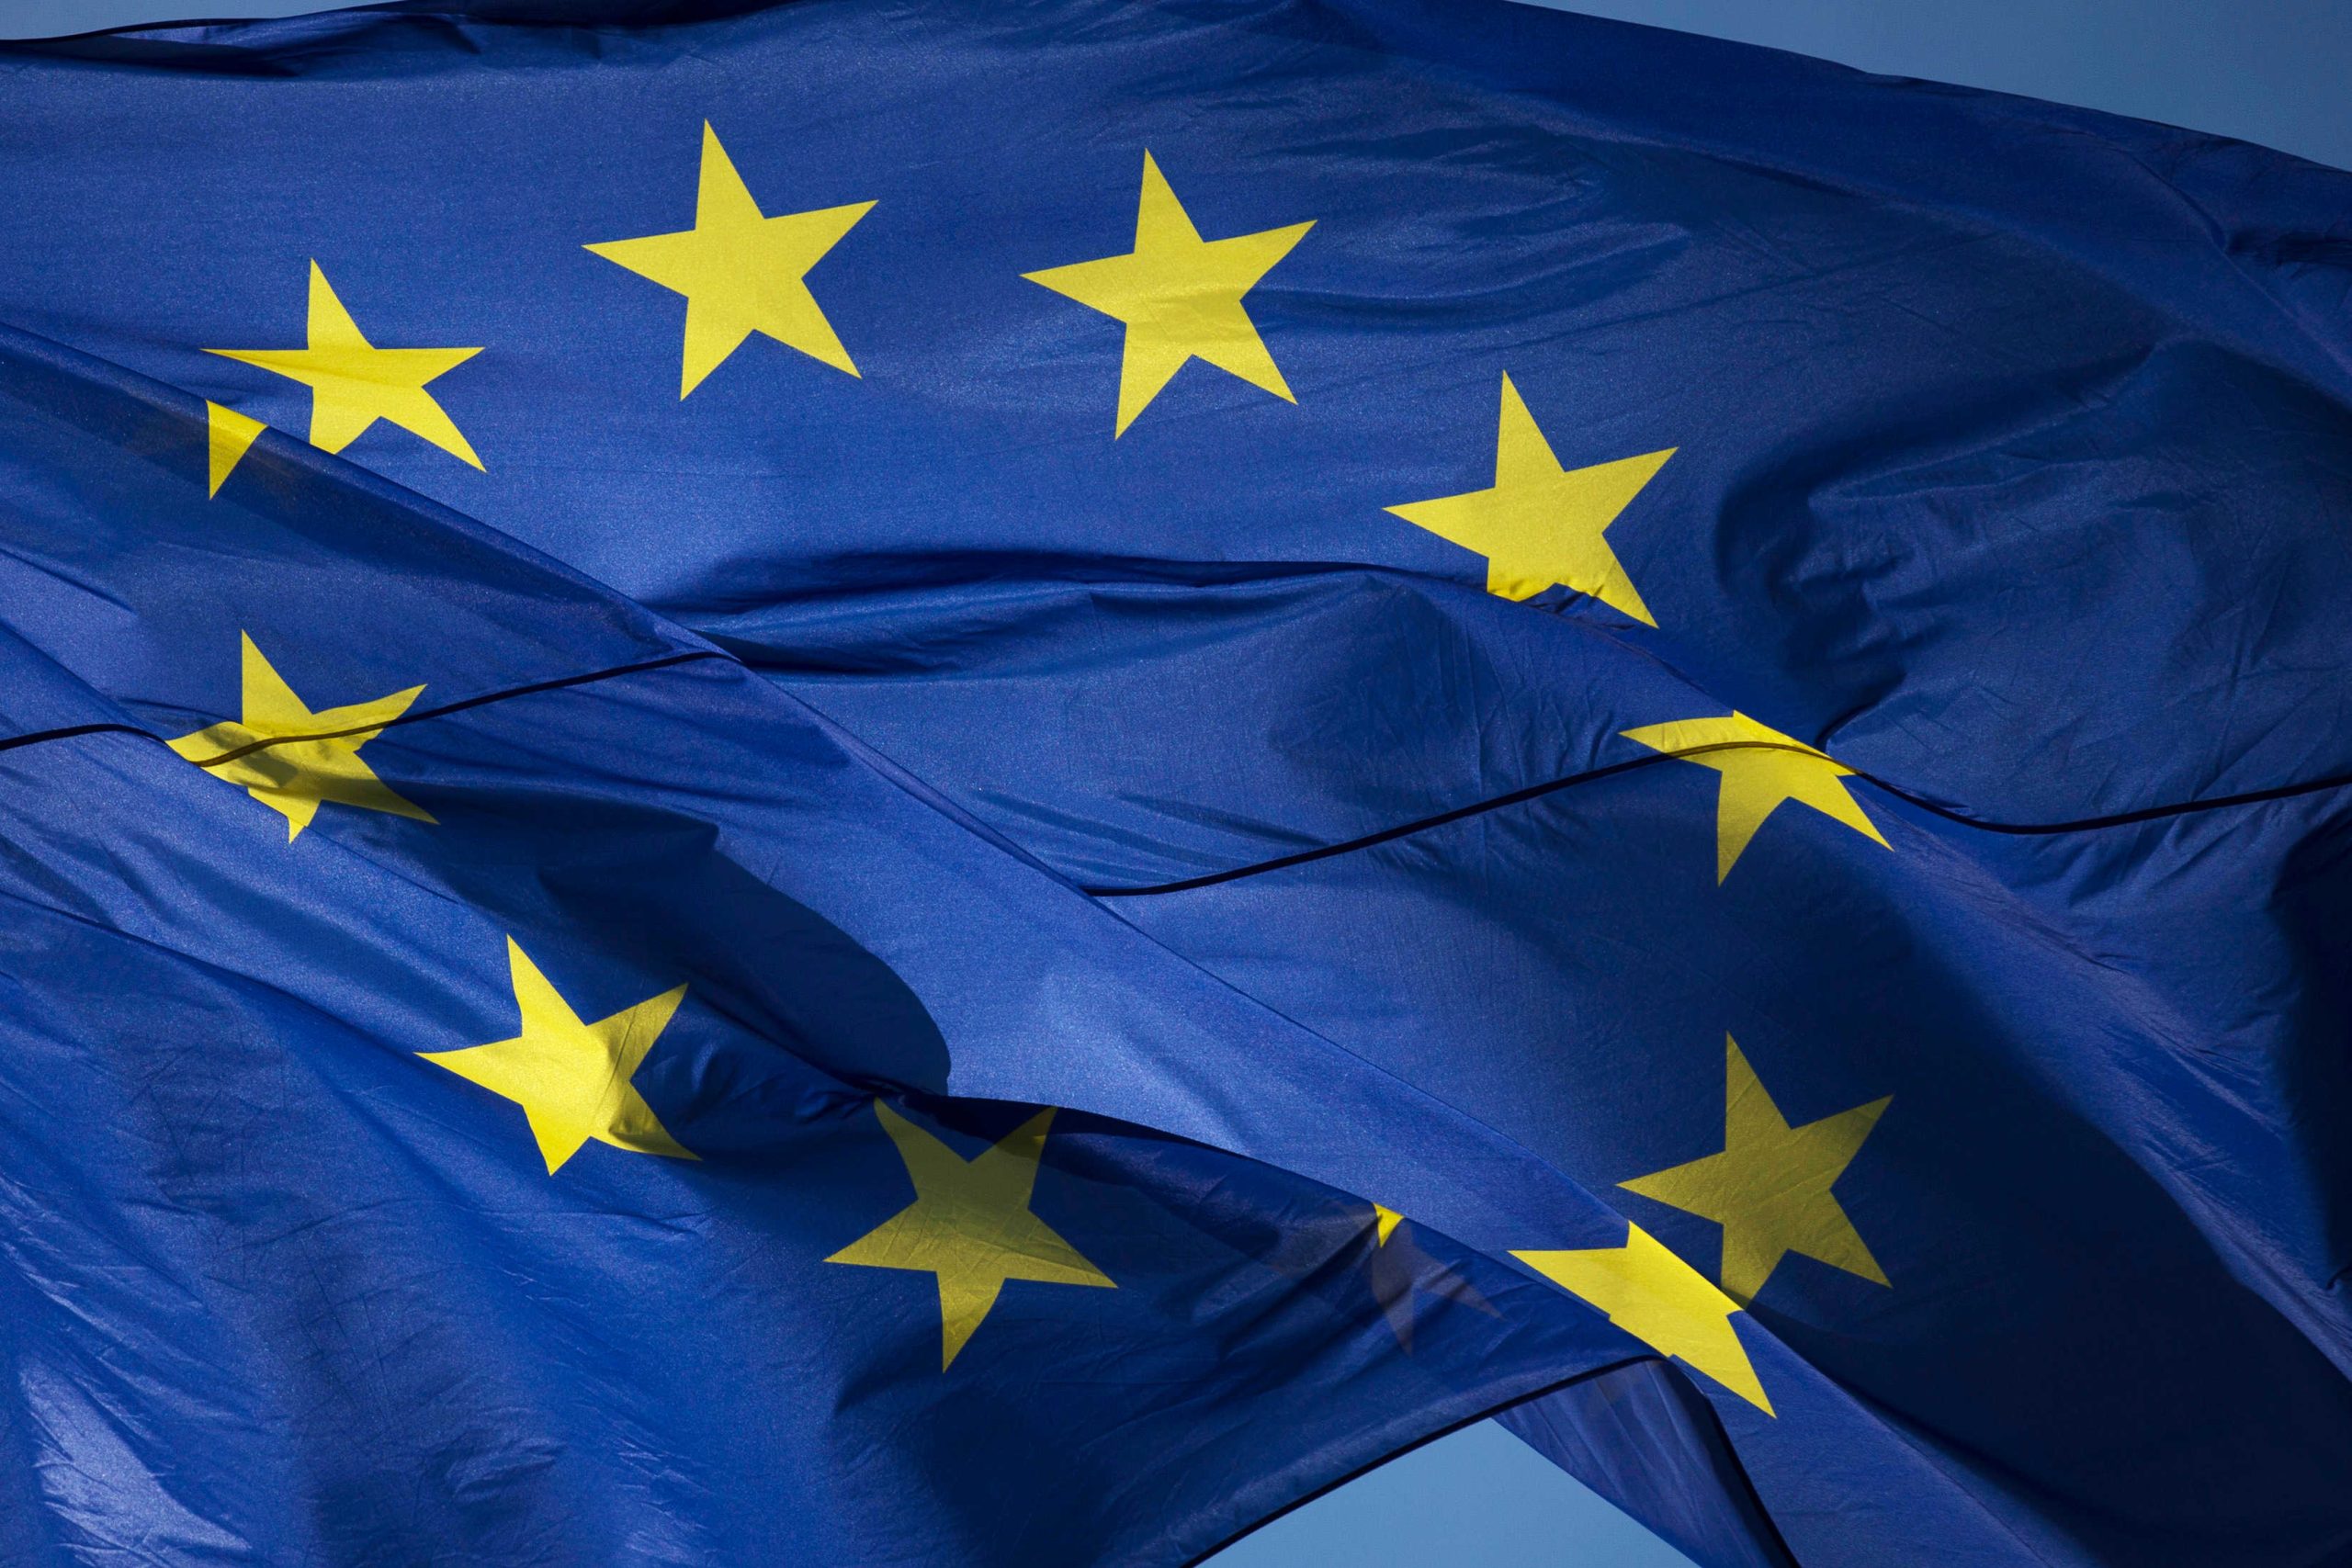 Αρθρο Π.Αδαμίδη: «Η ΕΕ είτε εκδίδει ευρωομόλογο είτε οδεύουμε σε μια Ευρώπη “αφεντικών και δούλων”»